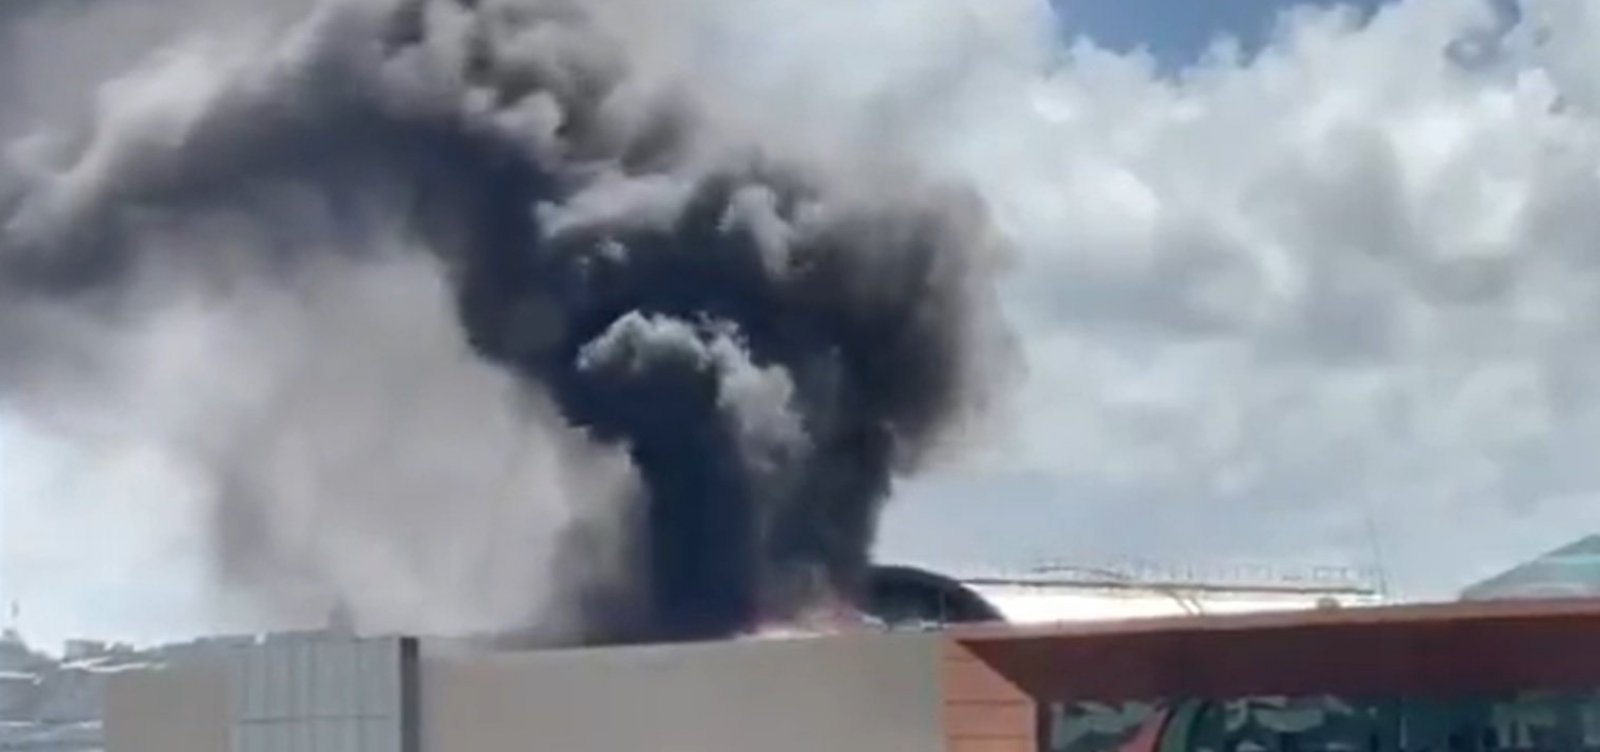 Acúmulo de gordura pode ter causado incêndio em restaurante do Salvador Shopping, diz bombeiro